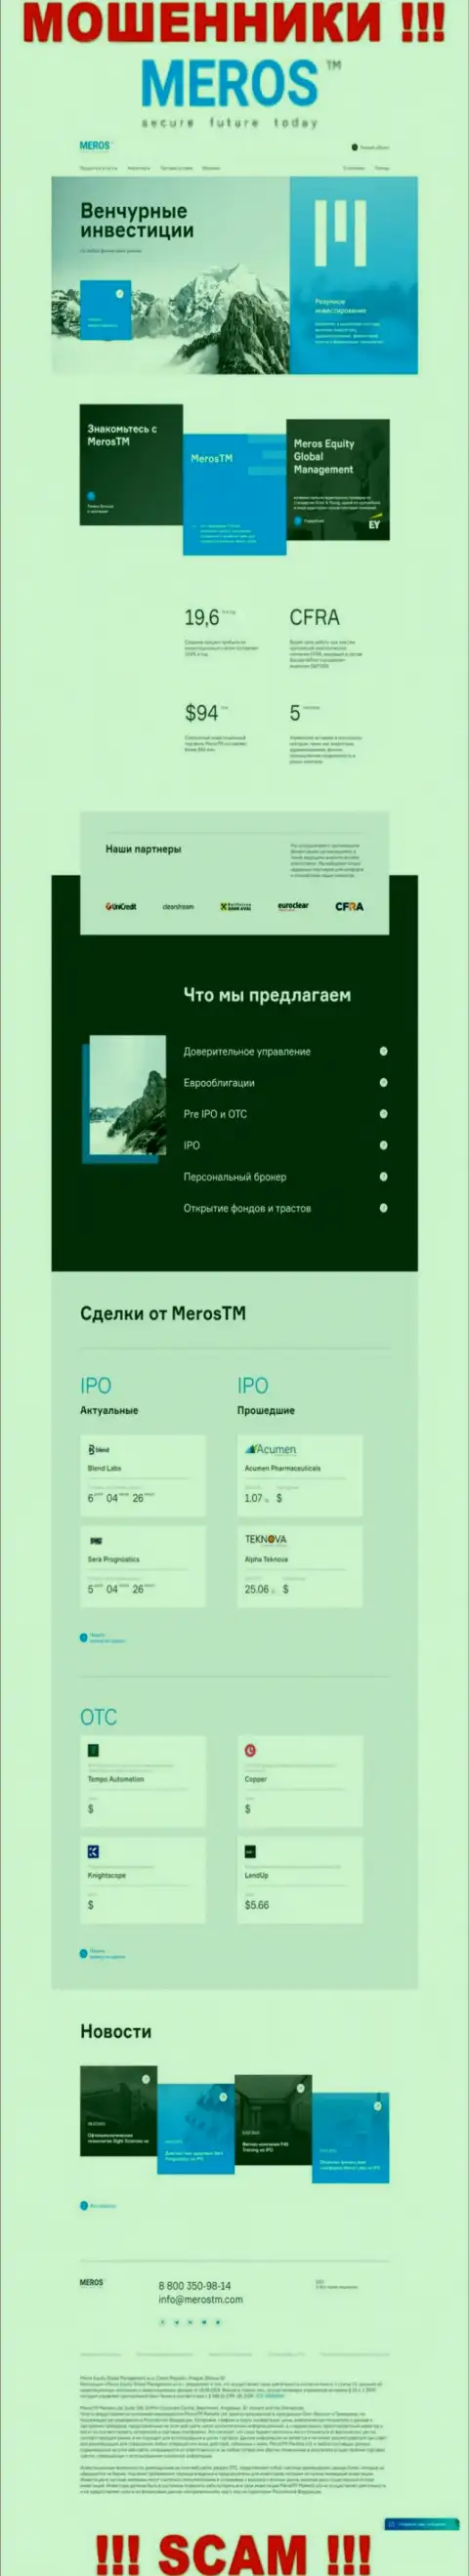 Обзор официального сайта махинаторов Meros TM